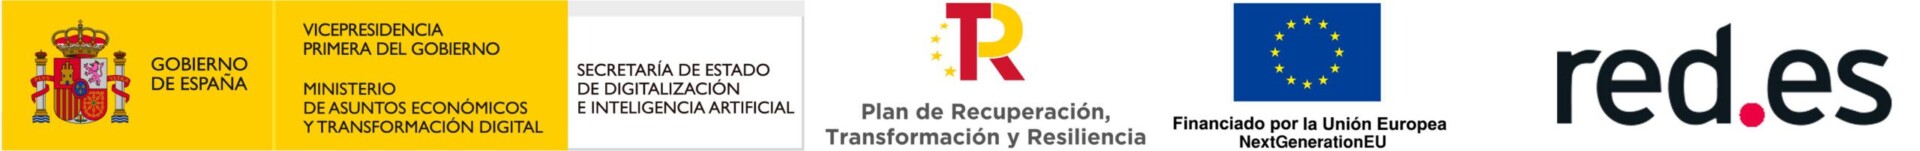 Red.es - Plan de Recuperación, Transformación y Resiliencia